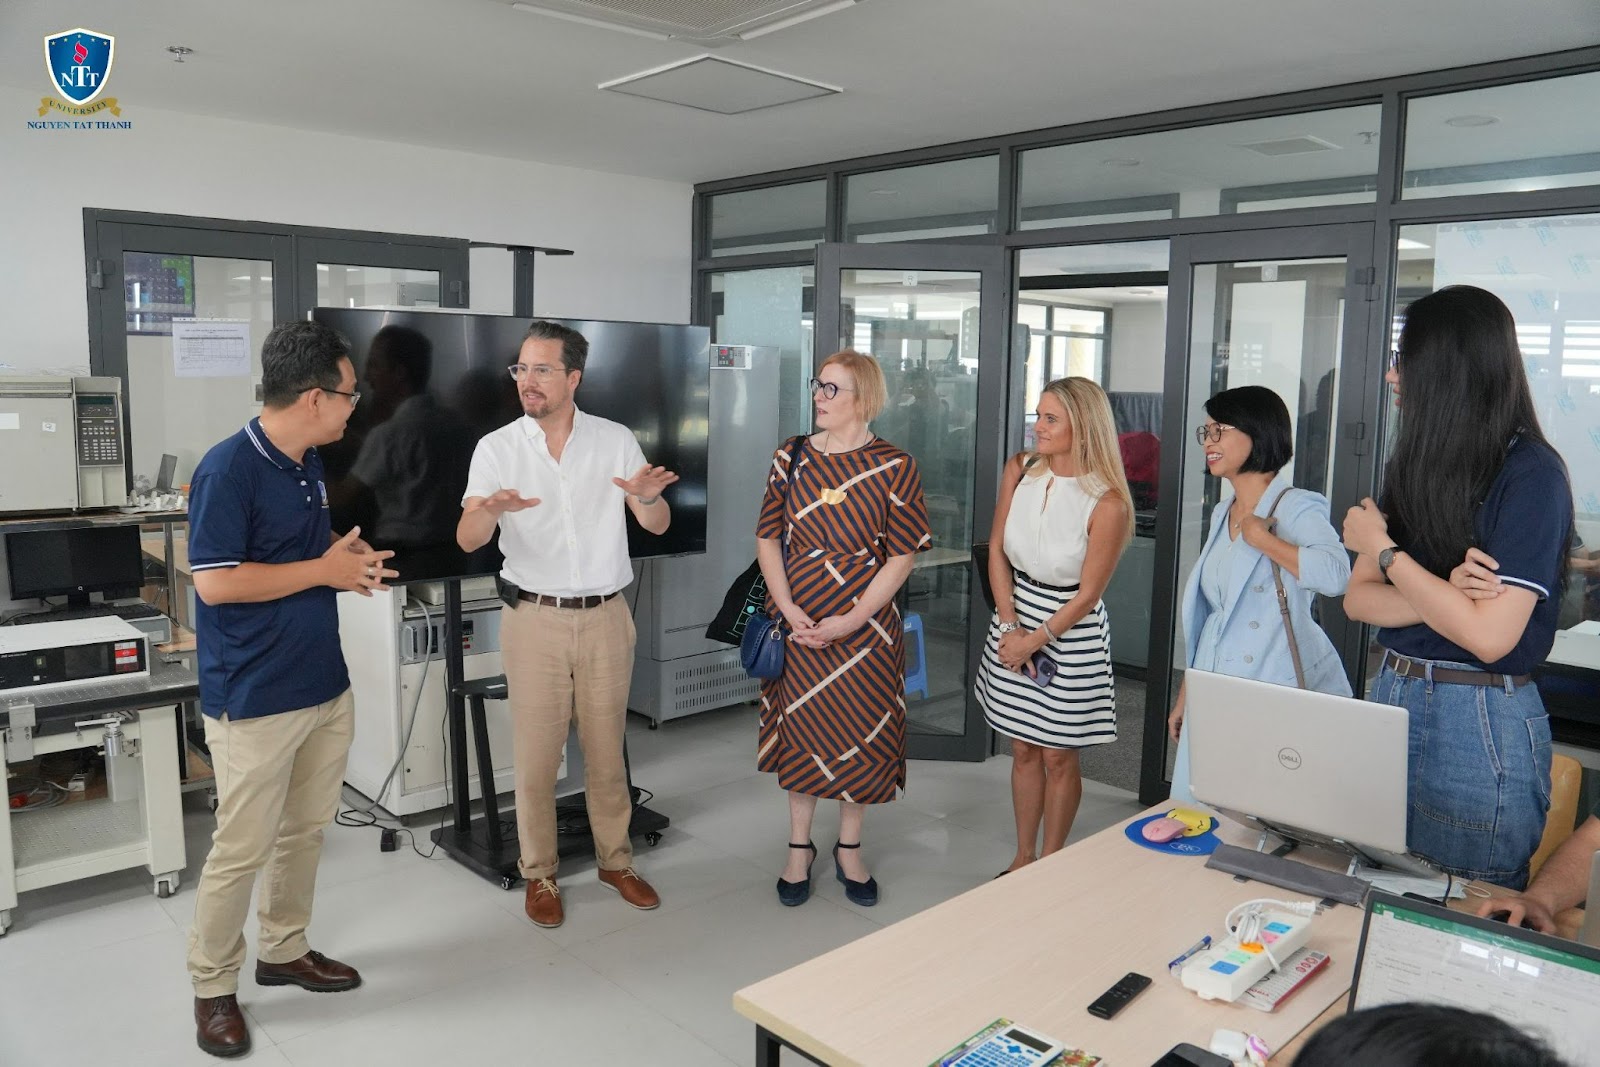 Trường Đại học Nguyễn Tất Thành và University for the Creative Arts, Vương Quốc Anh đẩy mạnh trao đổi hợp tác trong lĩnh vực đào tạo và nghiên cứu